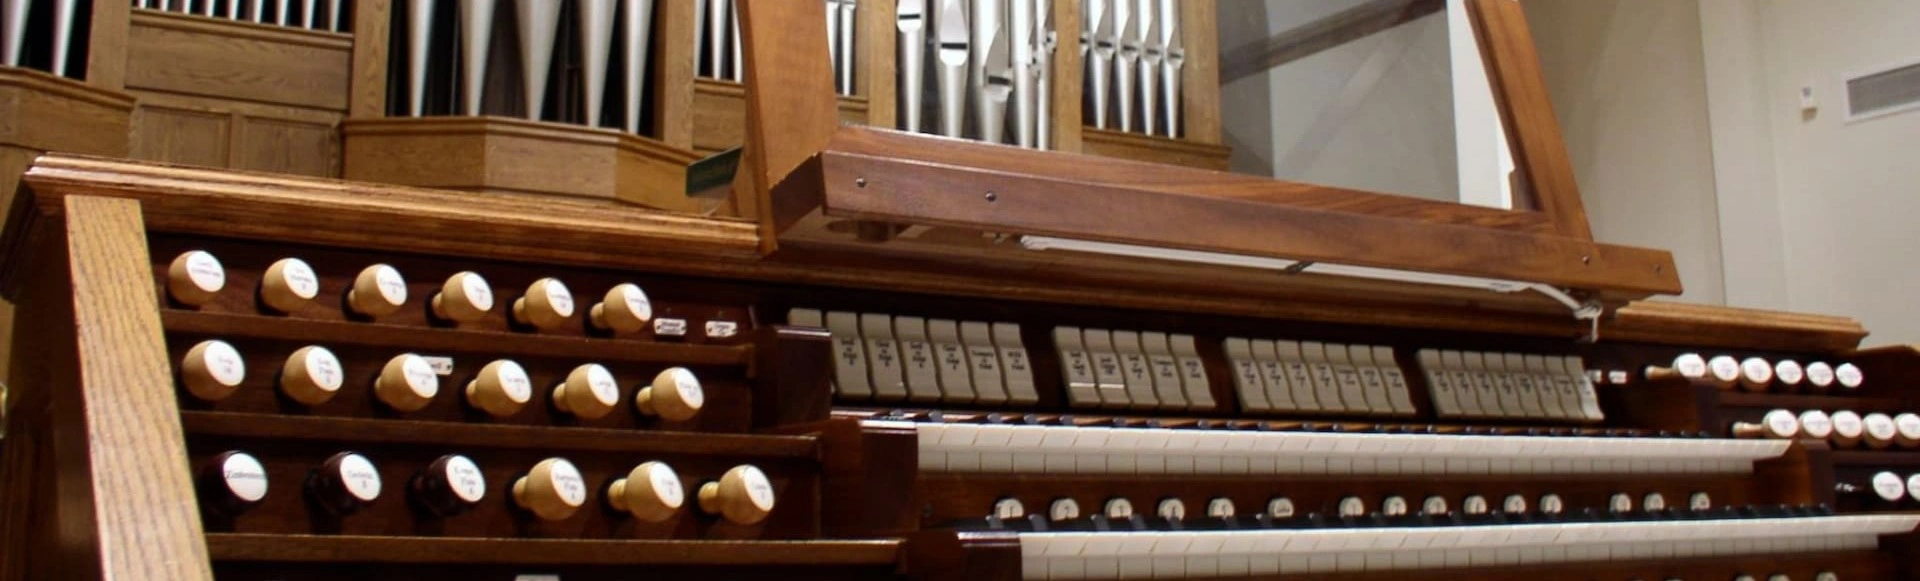 XXI Открытый фестиваль органной музыки в Сочи открывается